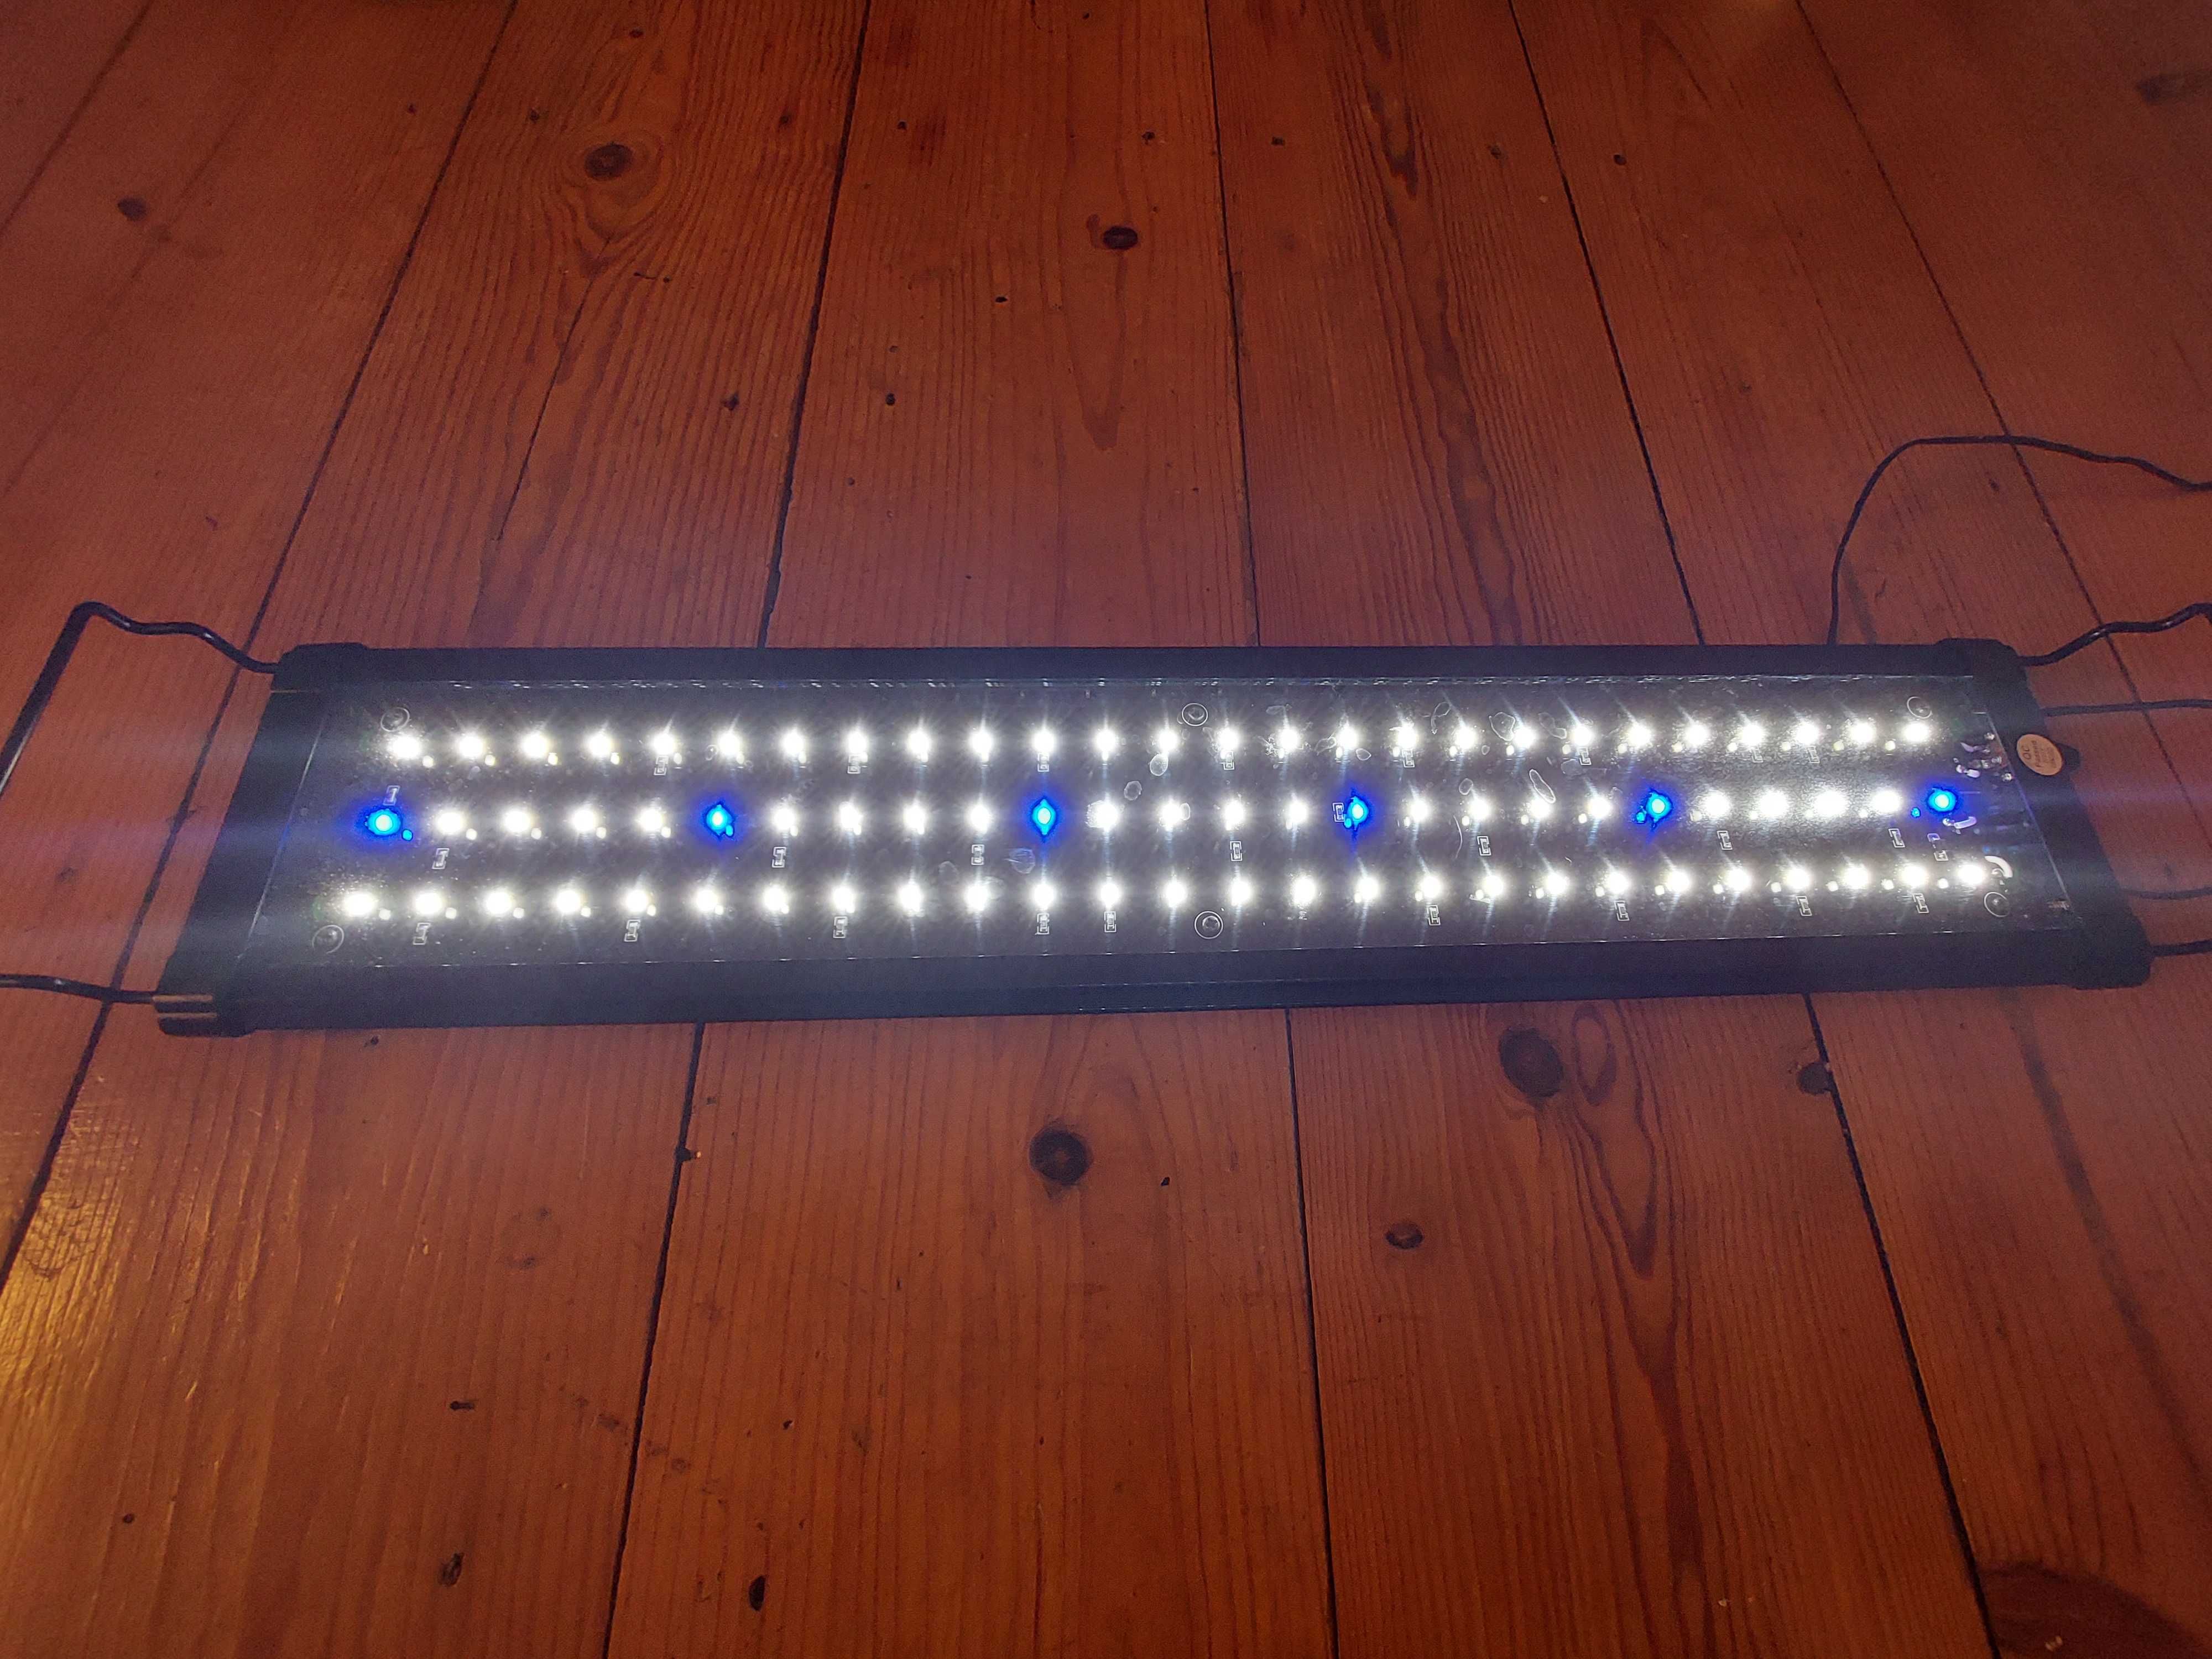 Calha LED aquario 60cm